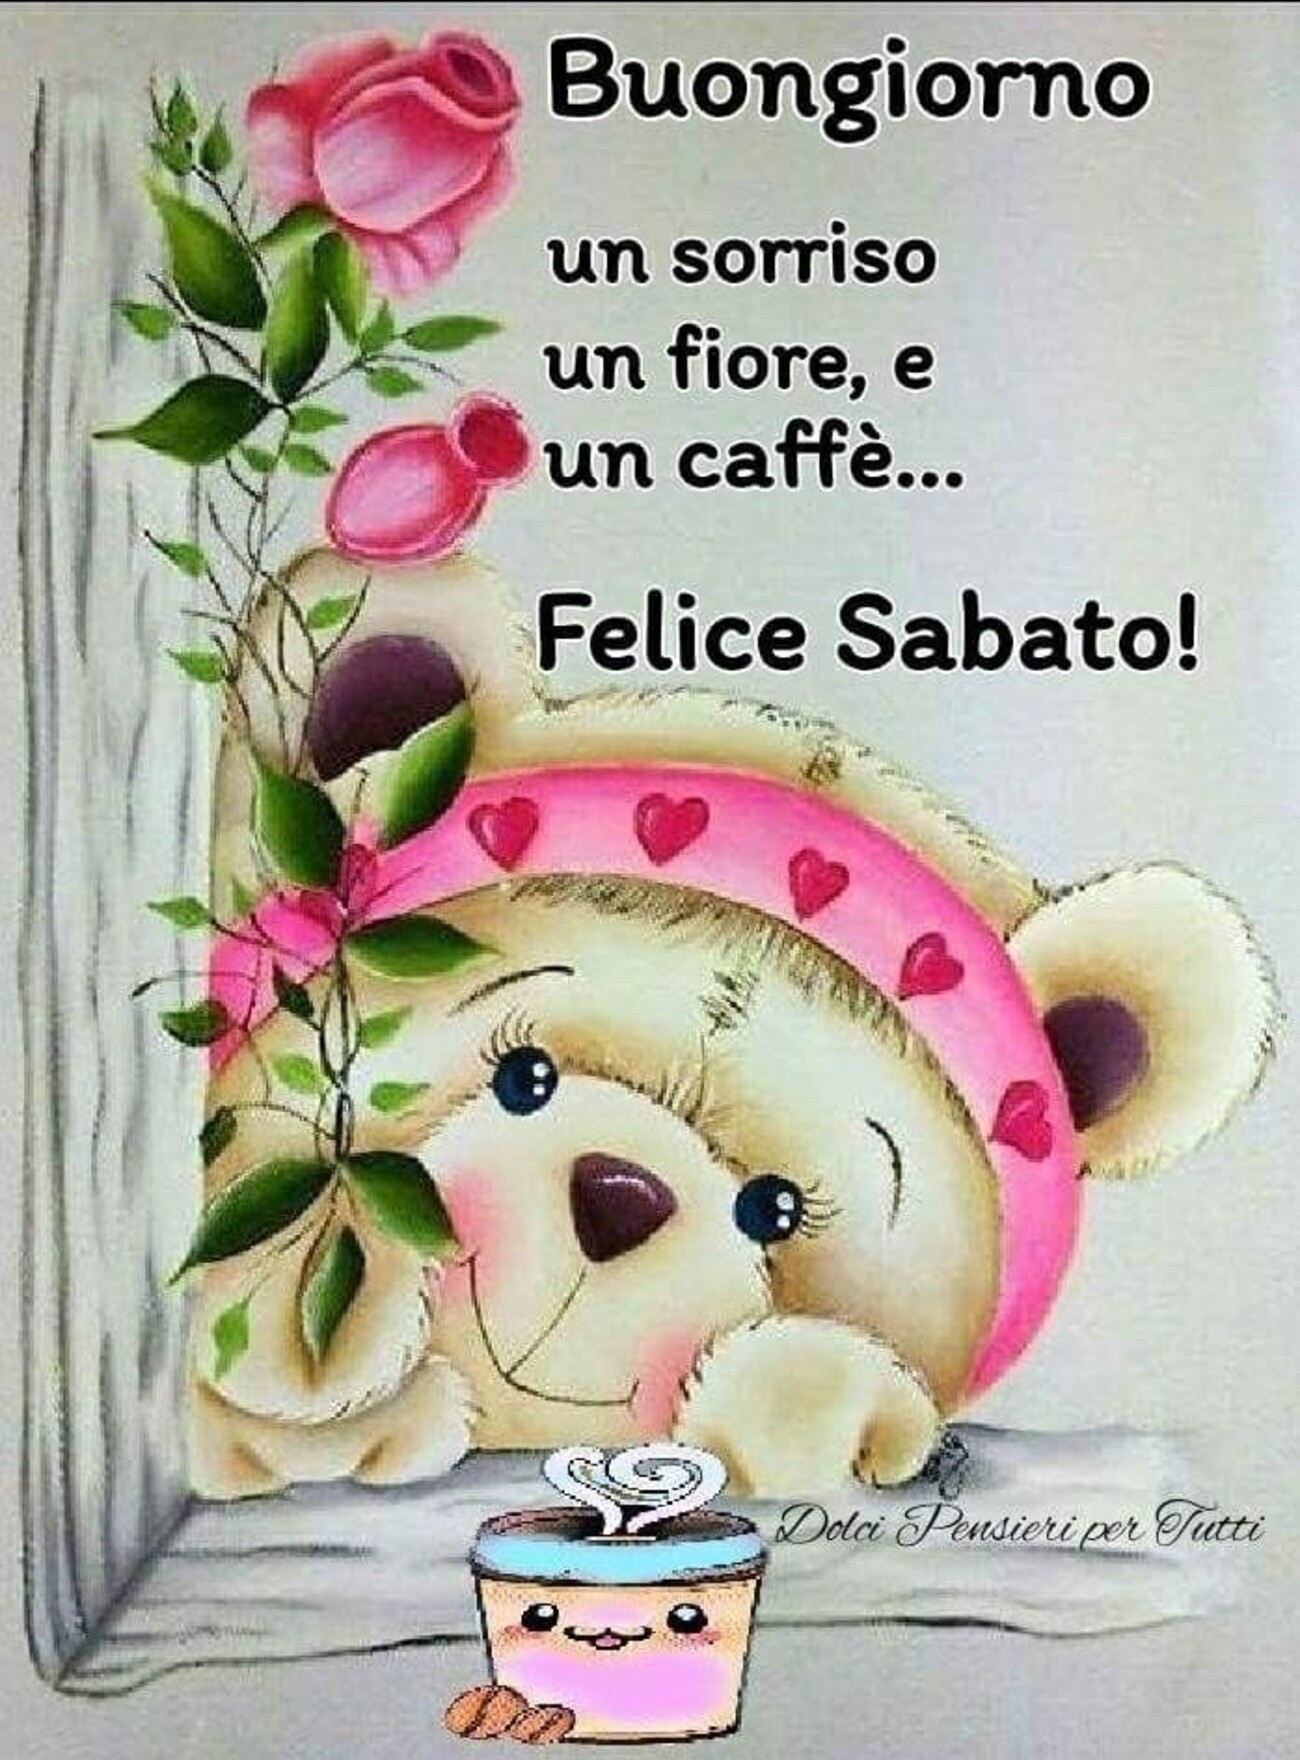 Buongiorno un sorriso, un fiore e un caffè...Felice Sabato